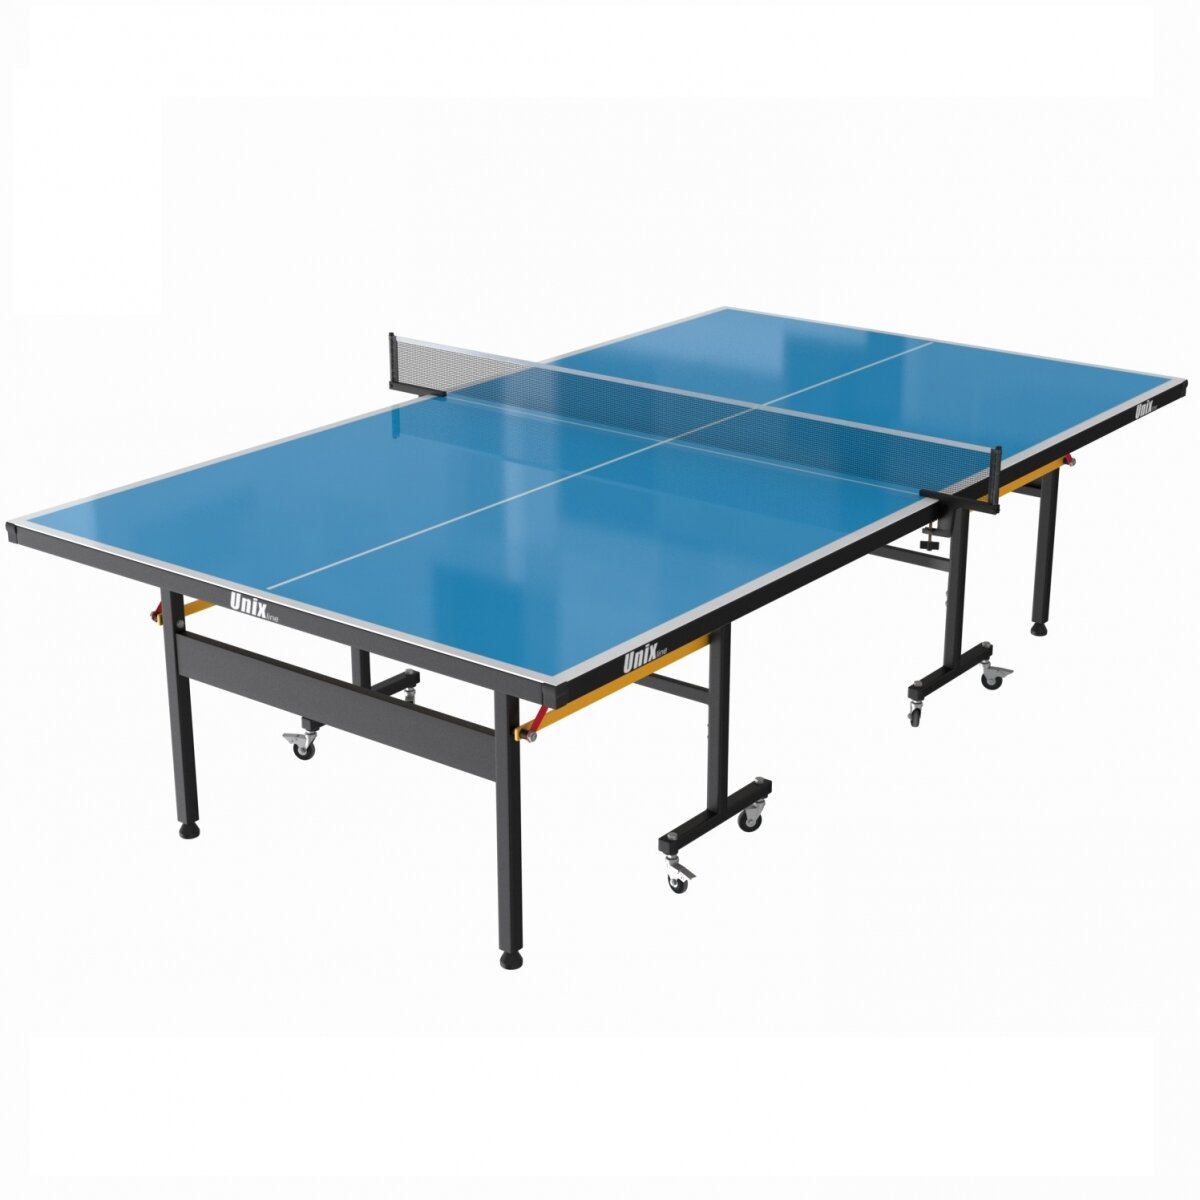 UNIX всепогодный теннисный стол line Outdoor - 6 мм (синий)